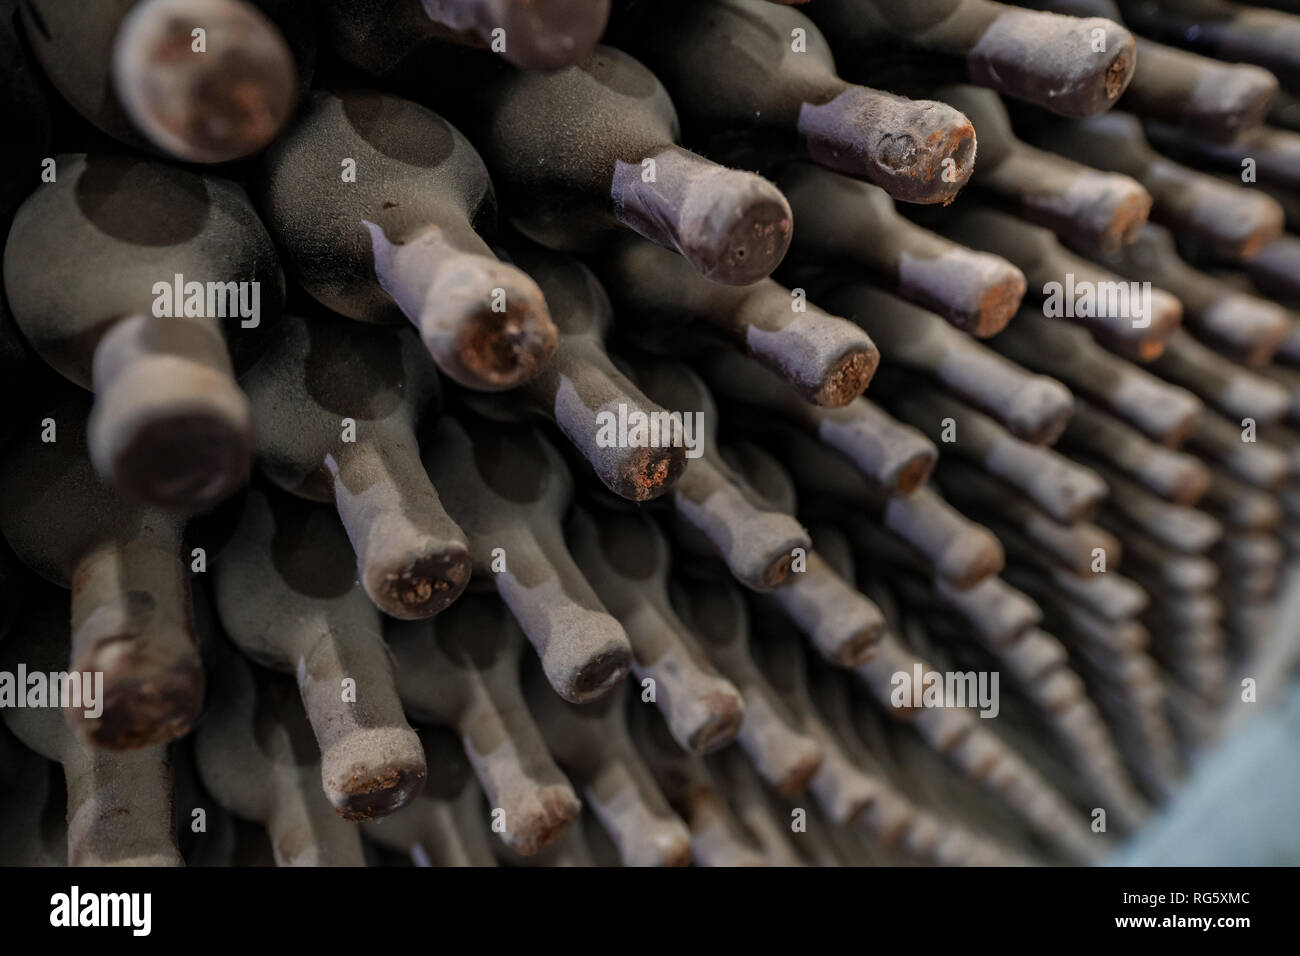 Dusty wine bottles in winery Stock Photo